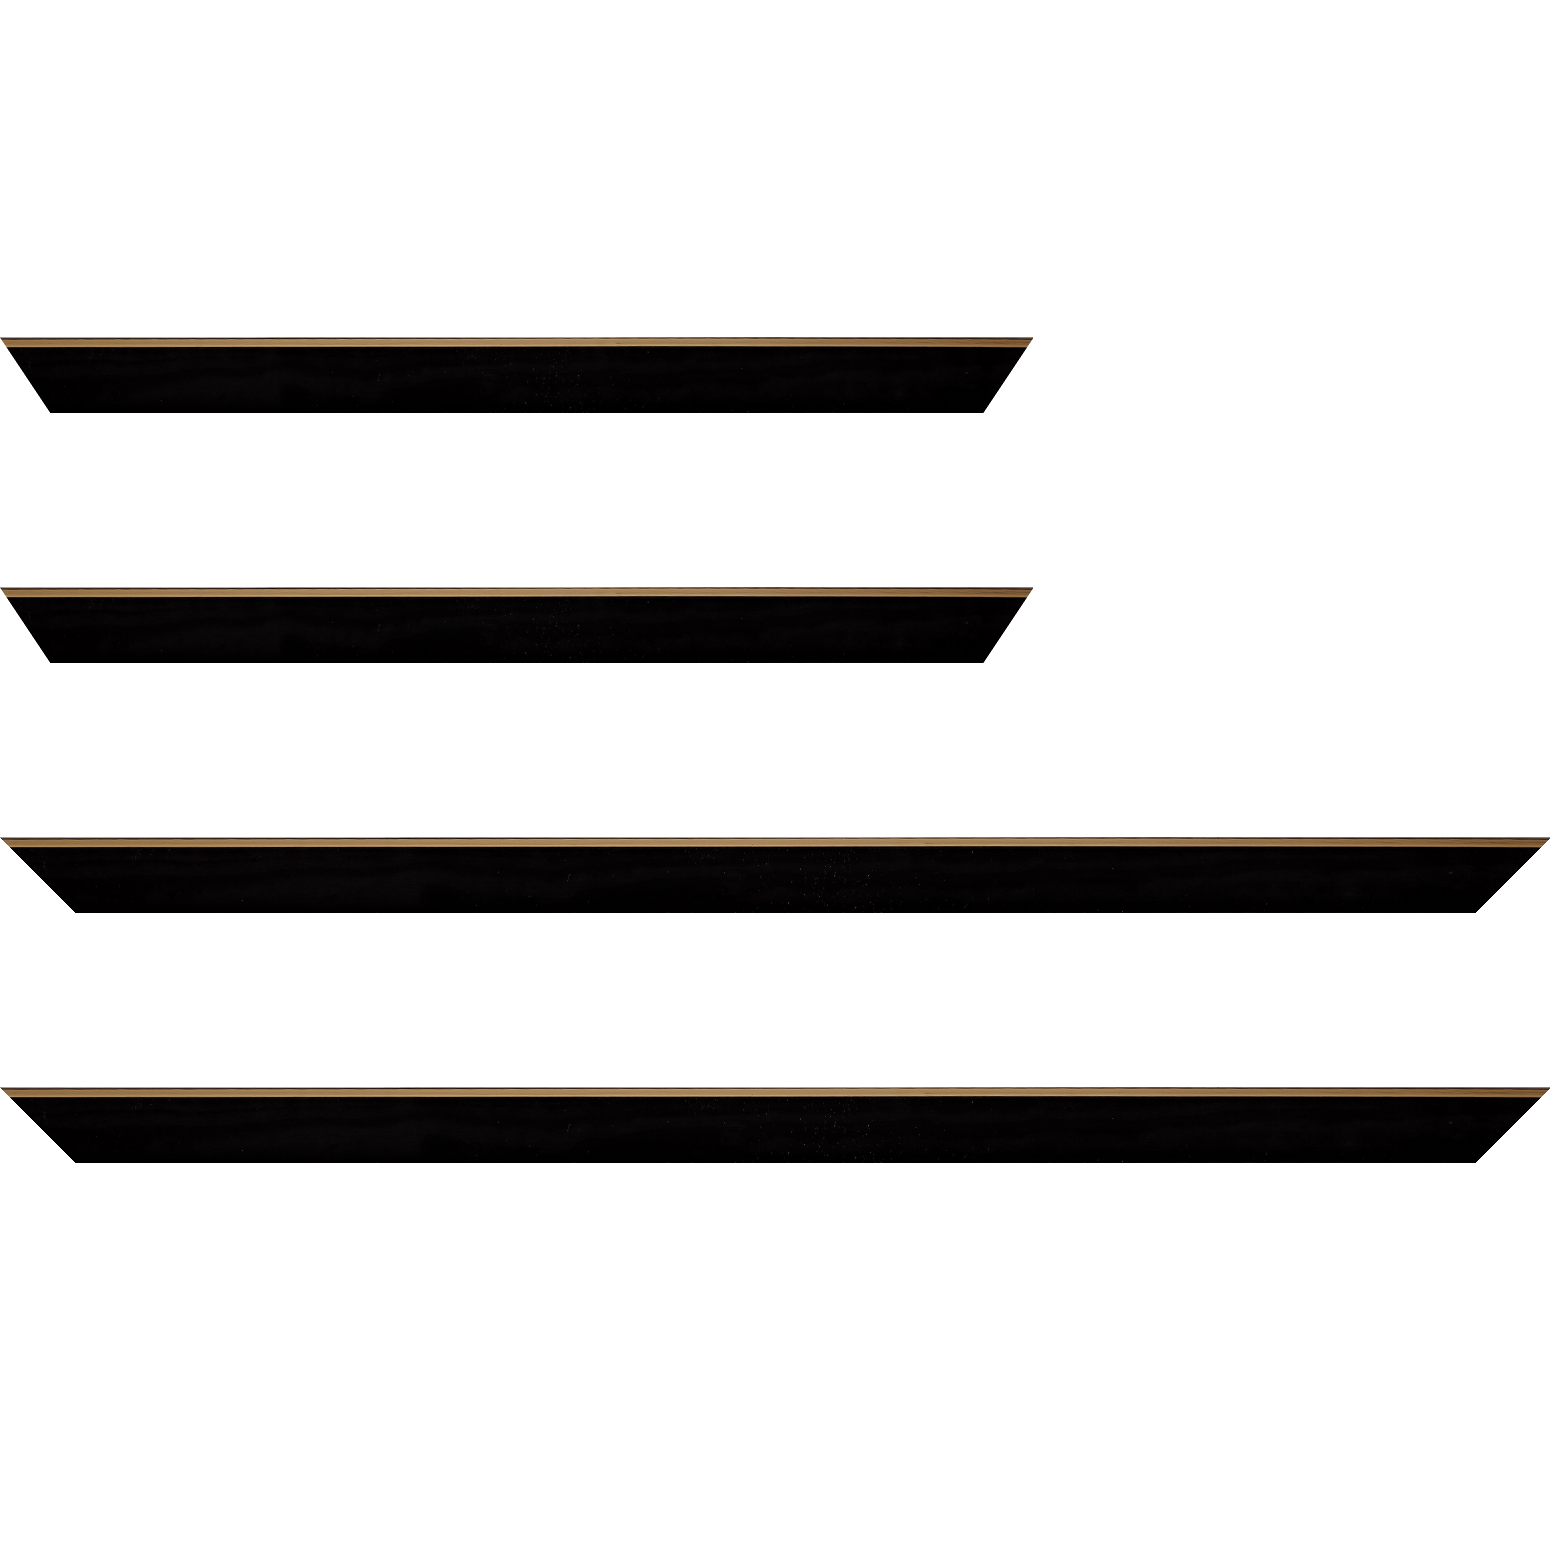 Baguette bois profil arrondi en pente plongeant largeur 2.4cm couleur noir satiné,veine du bois  apparent (pin) , angle du cadre extérieur filet or chromé - 59.4x84.1